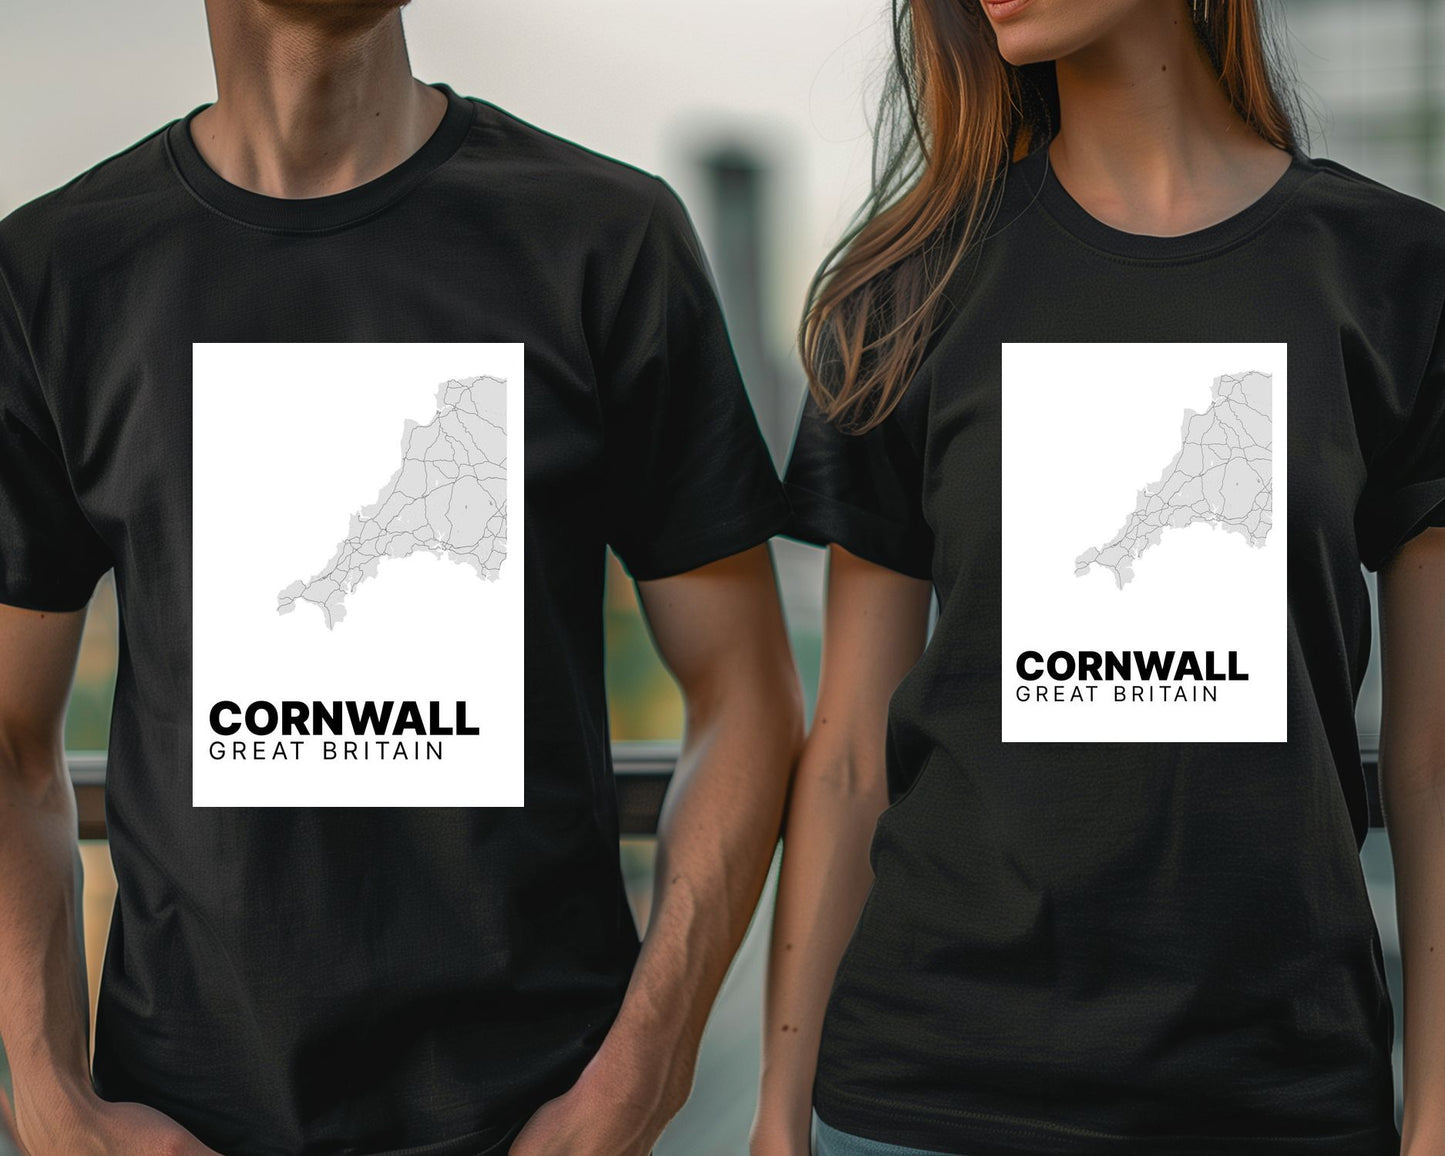 Cornwall Map - @VickyHanggara